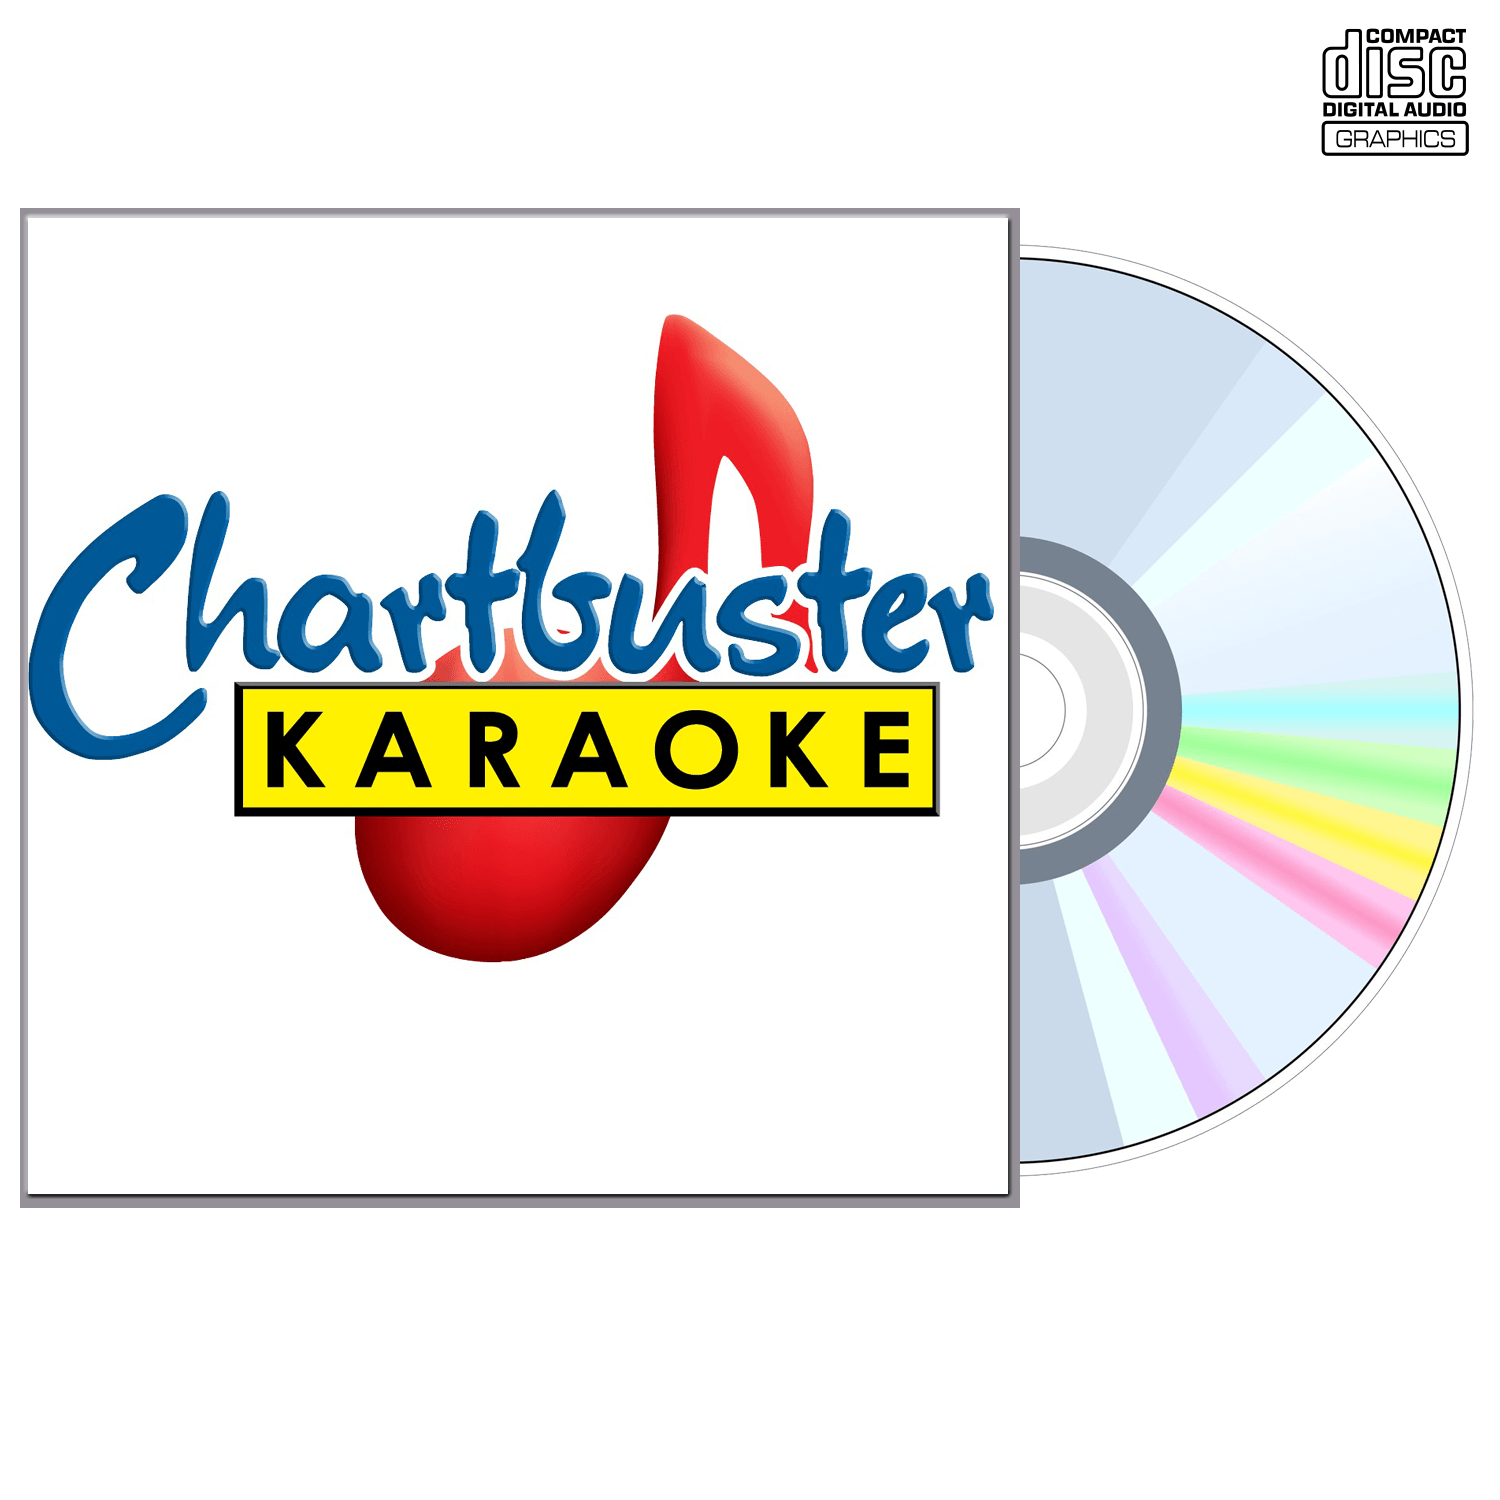 John Berry - CD+G - Chartbuster Karaoke - Karaoke Home Entertainment